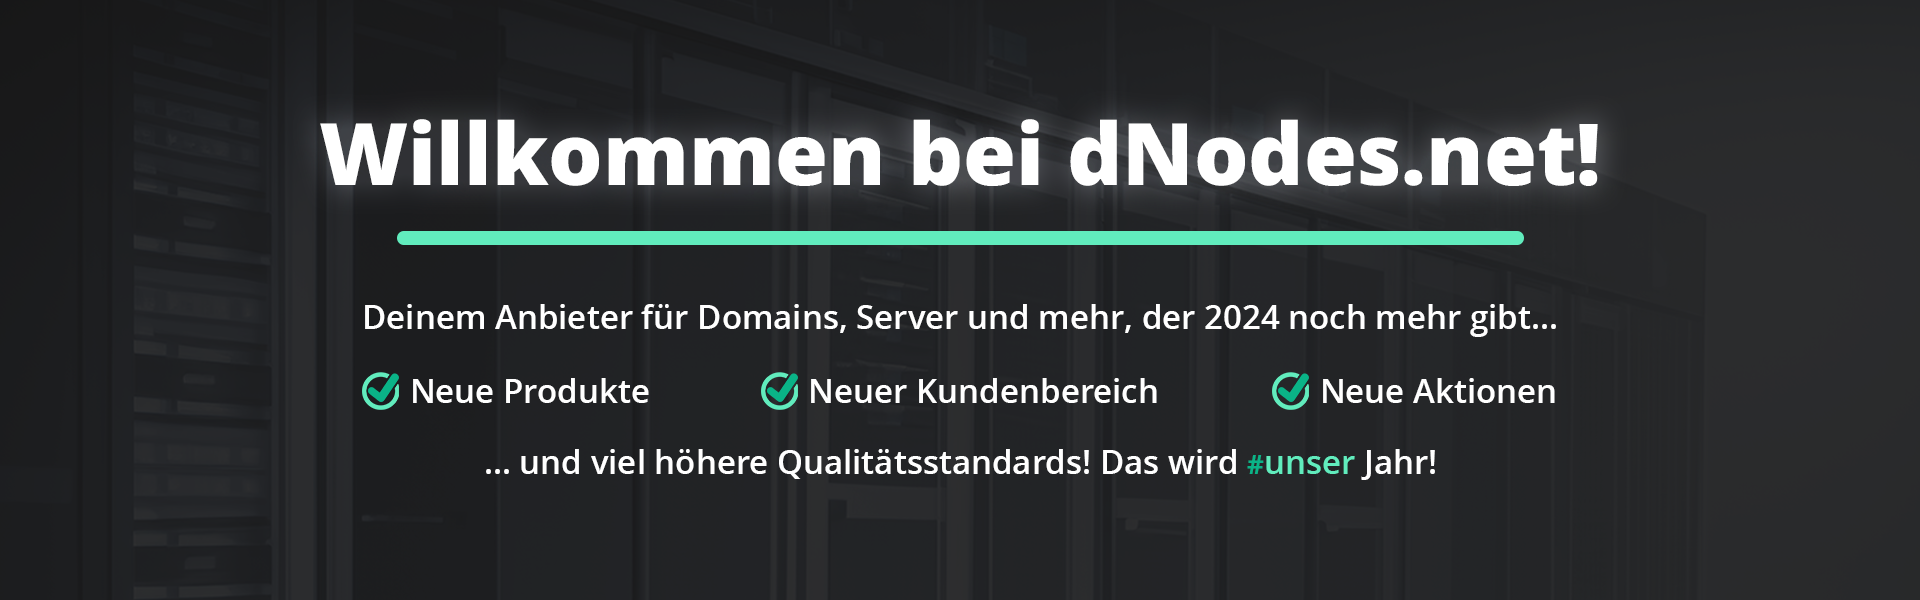 Willkommen bei dNodes.net!